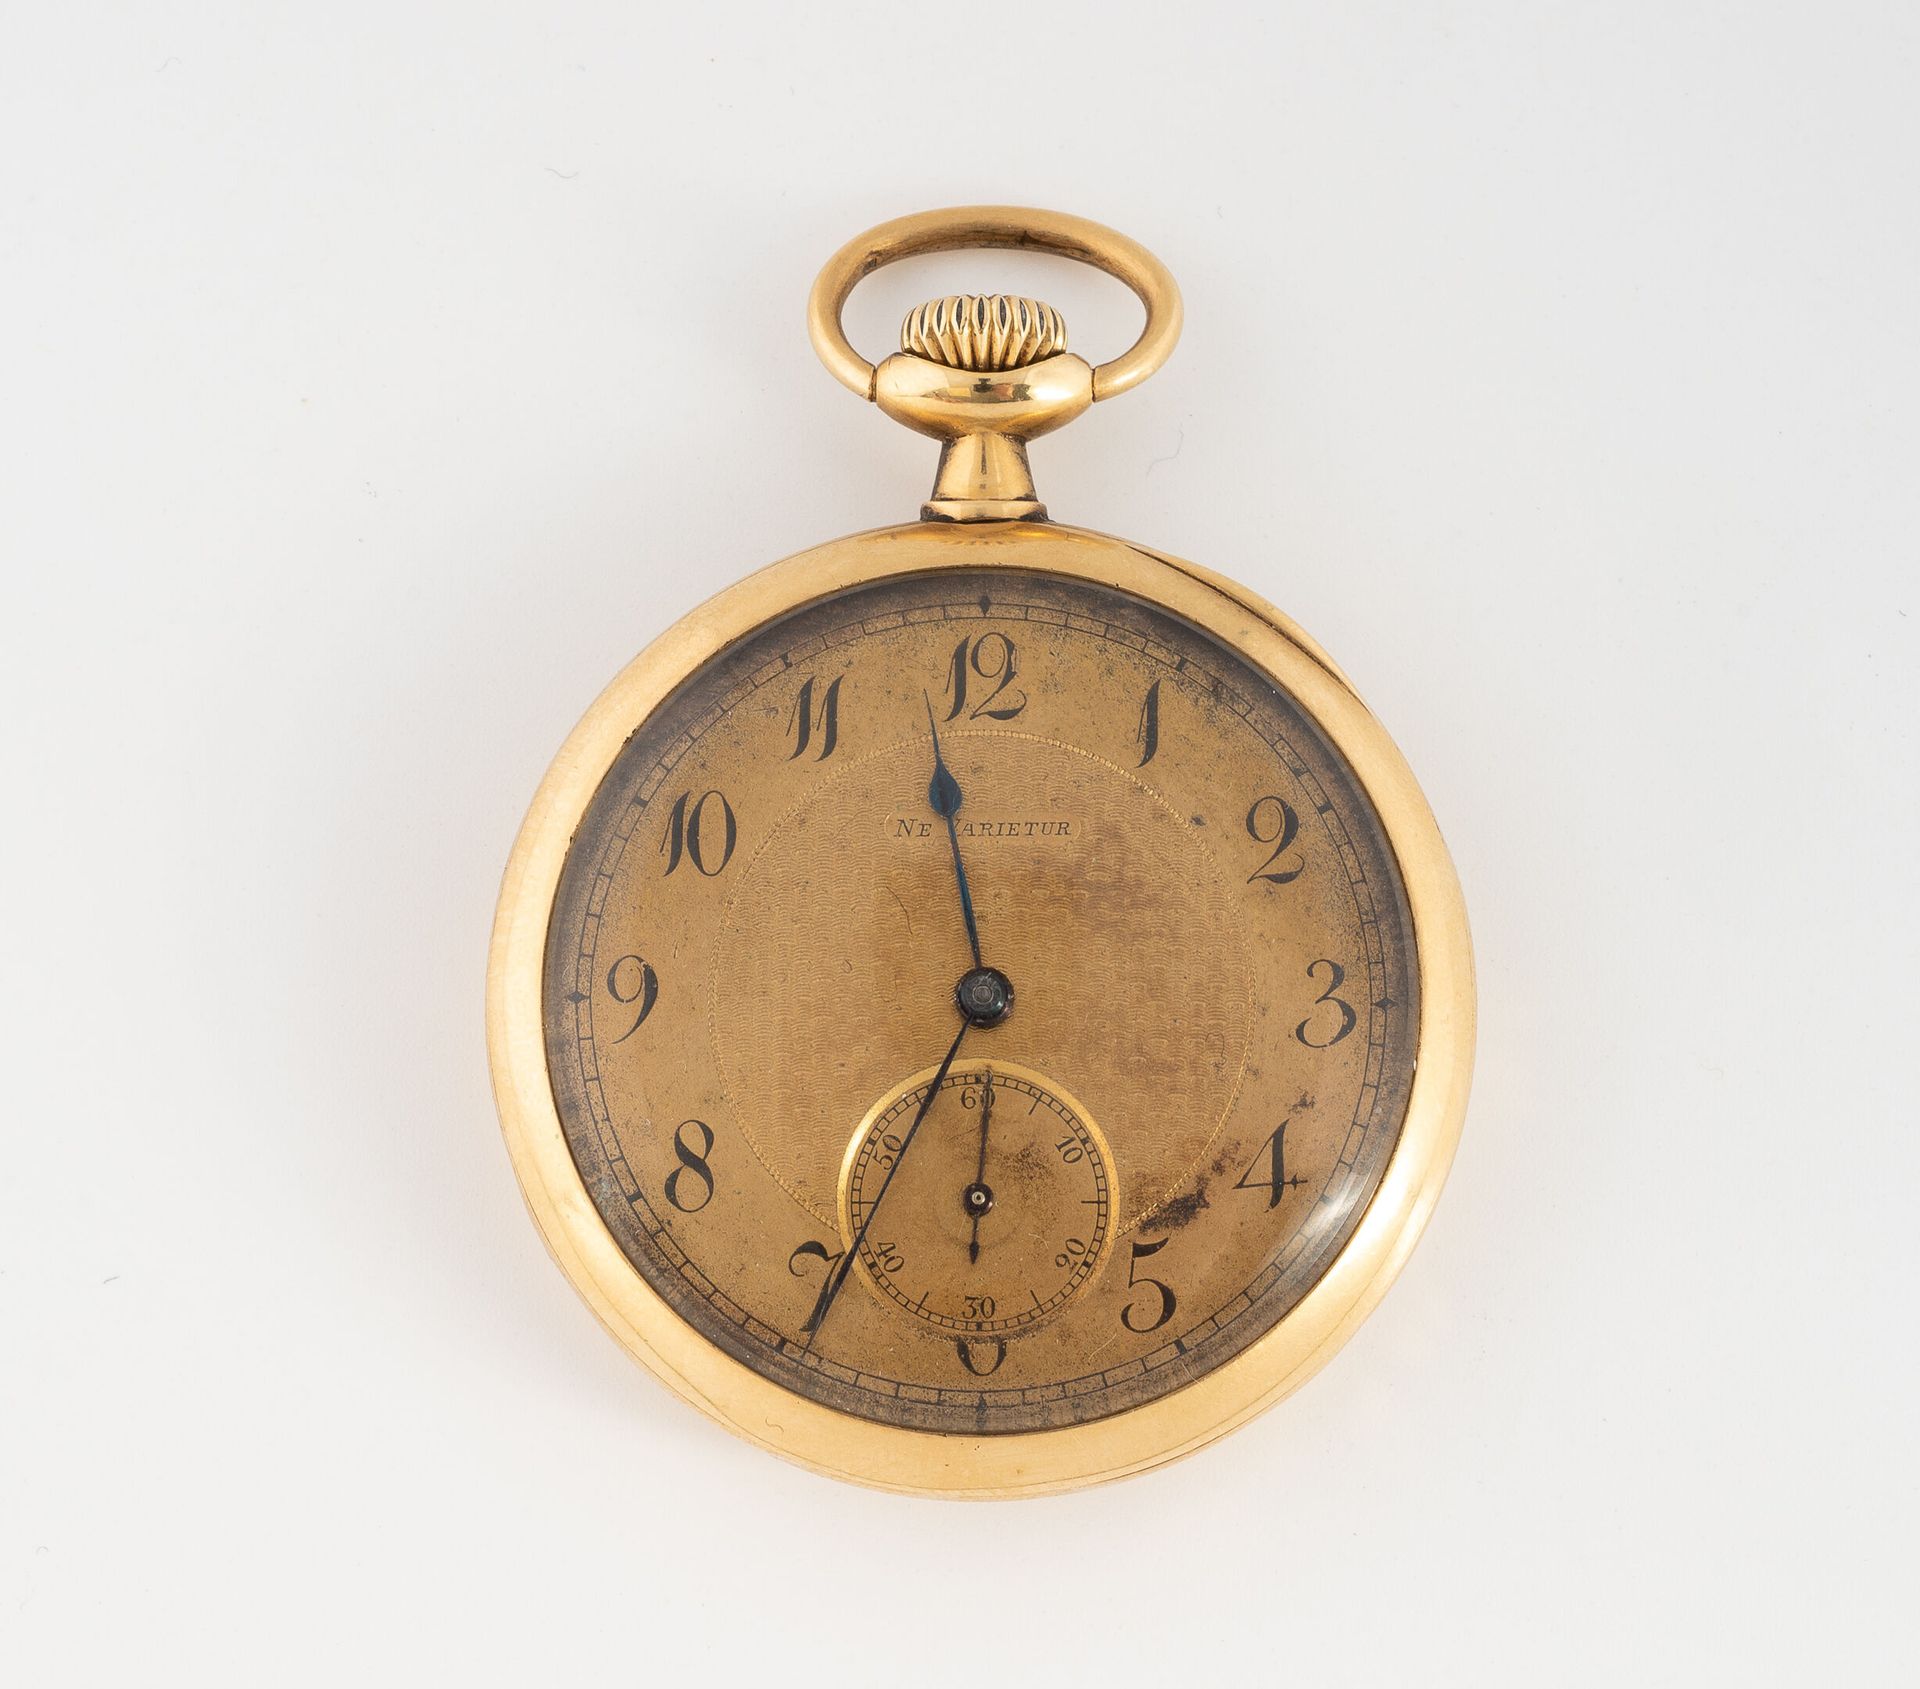 NE VARIETUR Reloj de bolsillo de oro amarillo (750).
Tapa trasera lisa. 
Esfera &hellip;